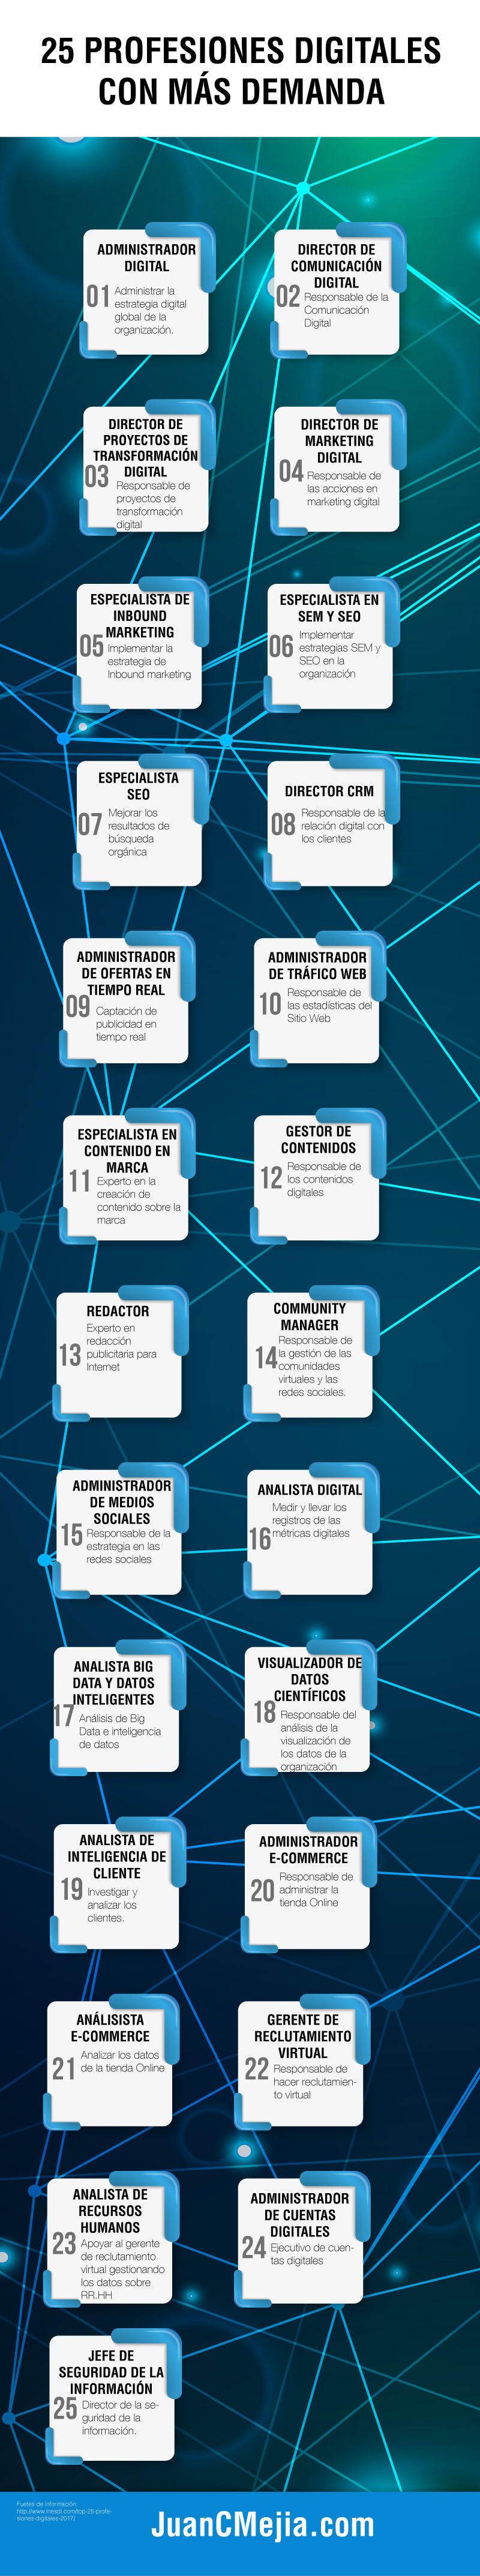 25 profesiones digitales más demandadas Infografía en español